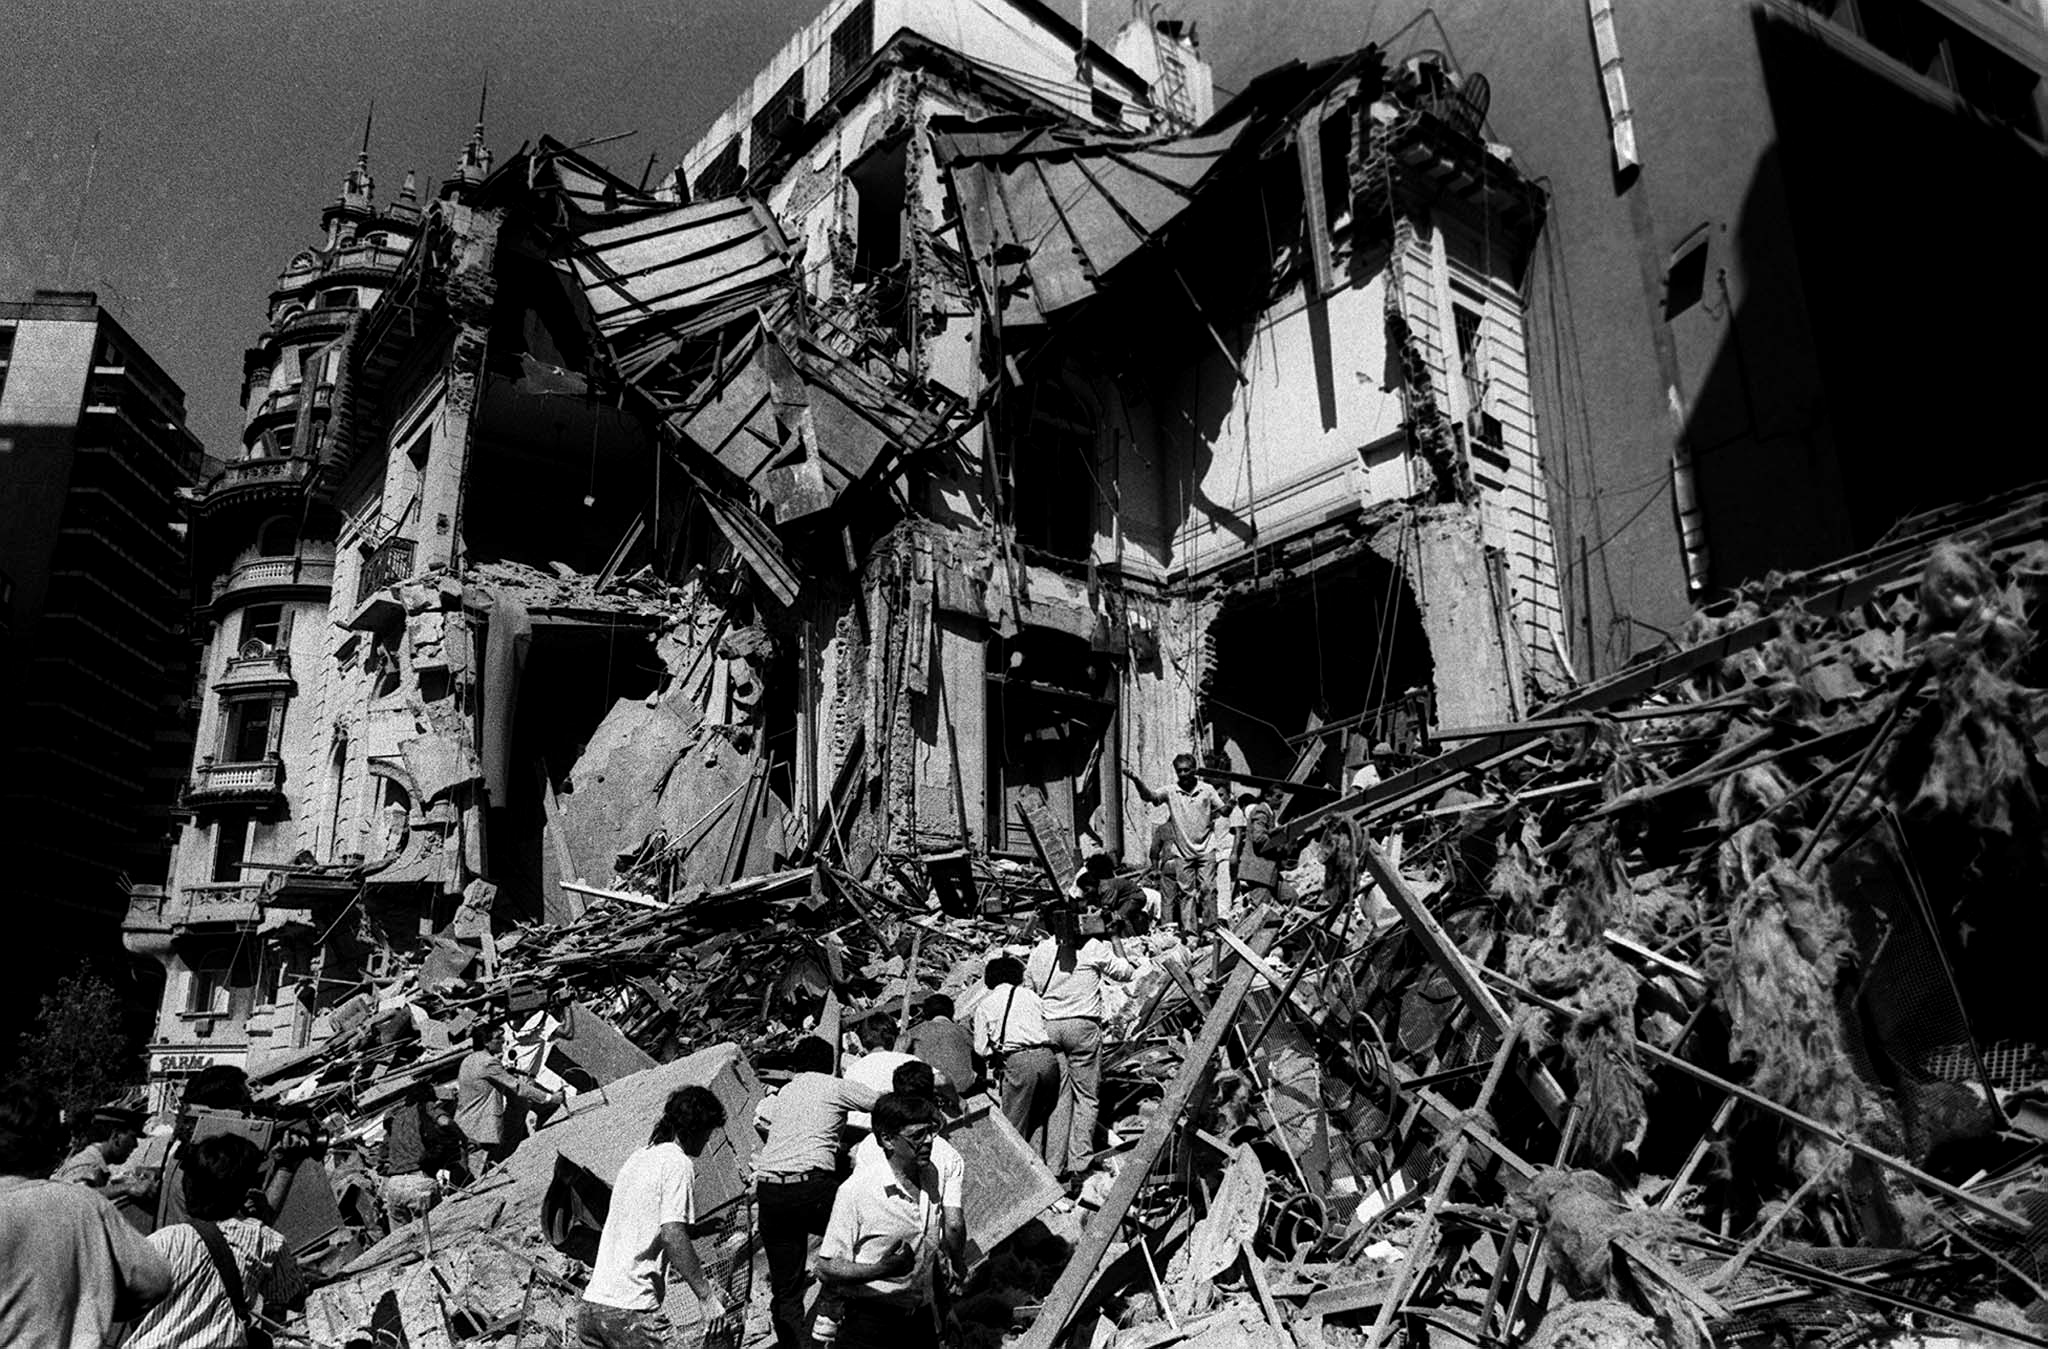 Acto y reclamo de justicia a 31 años del atentado a la embajada de Israel